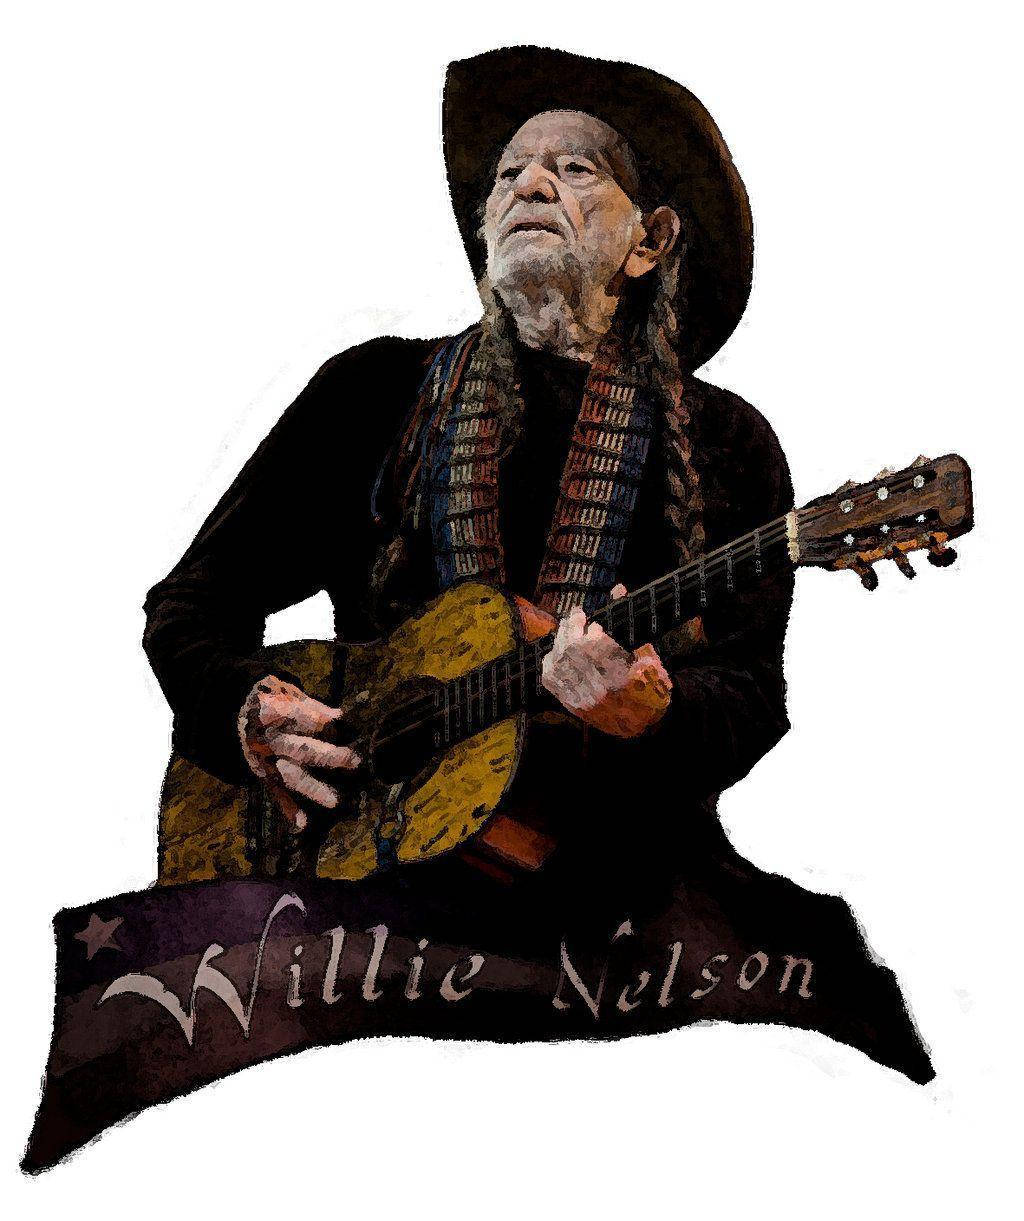 Tag en tur tilbage til 1970'erne musik med dette urbane fanart tapet af legendariske musiker Willie Nelson! Wallpaper